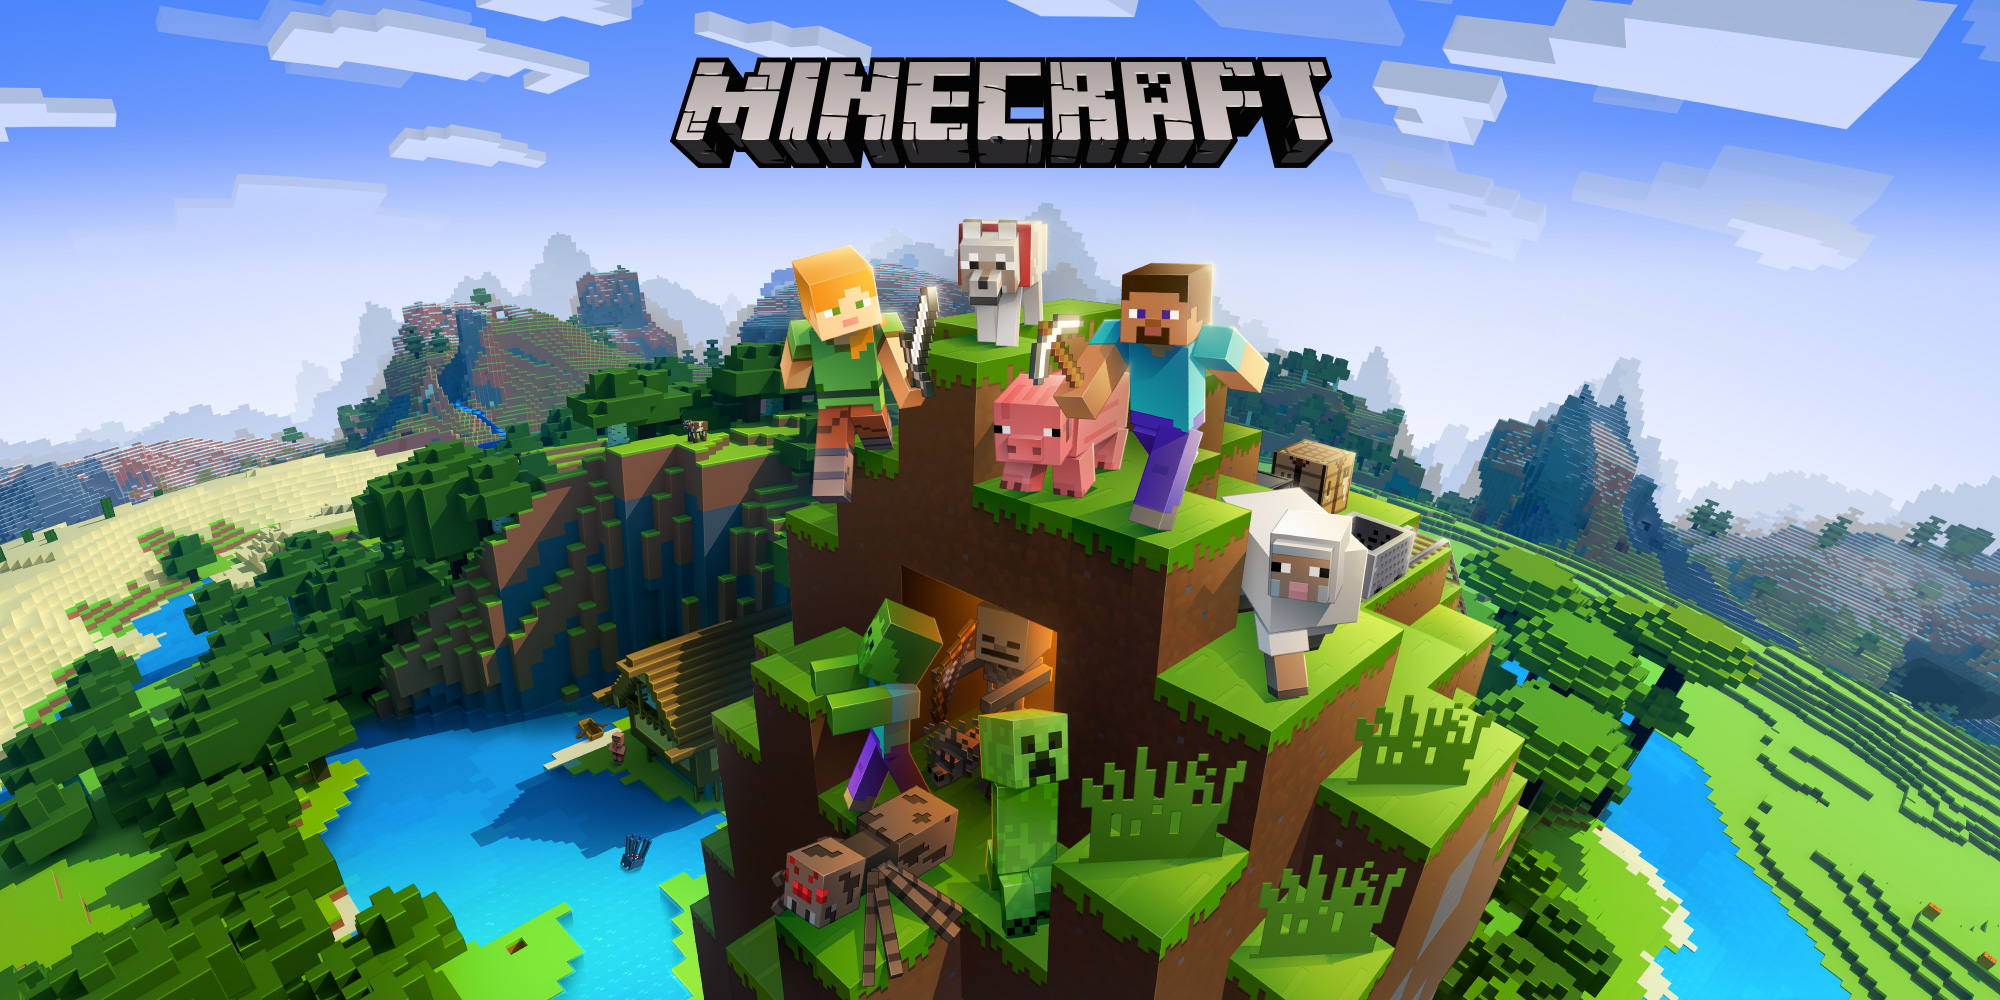 O Minecraft, que conta com 140 milhões de usuários, é um dos jogos mais populares do mundo e foi feito em Java pela empresa Mojave em sua primeira versão. RuneScape também é outro exemplo de jogo desenvolvido a partir da linguagem Java. Reprodução Nintendo.